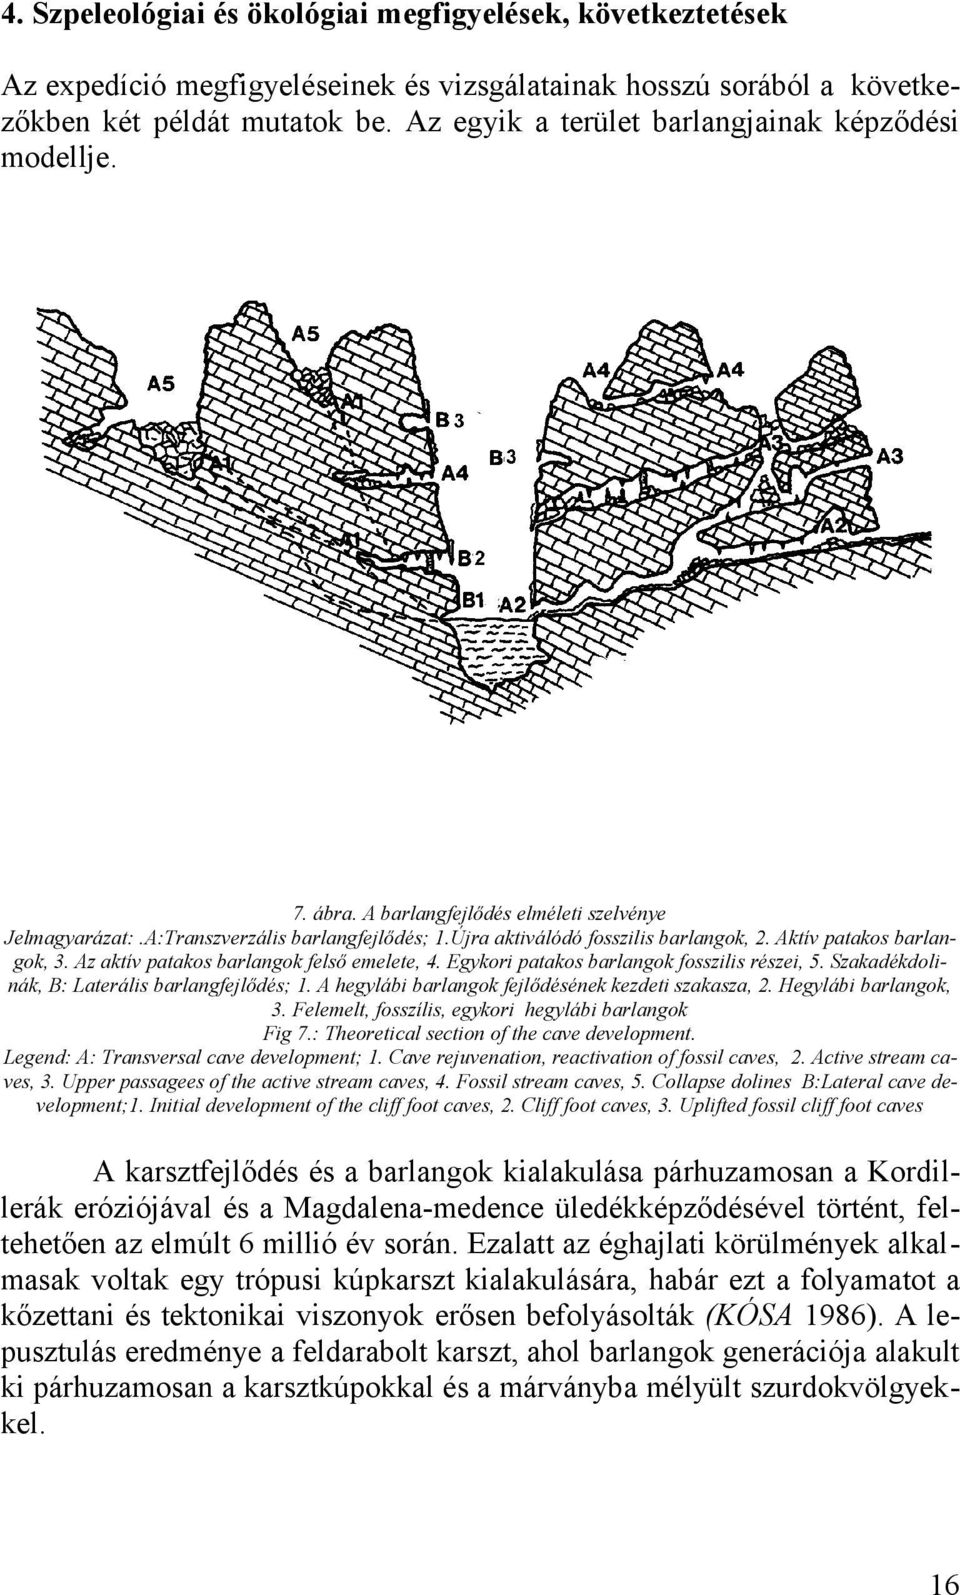 Aktív patakos barlangok, 3. Az aktív patakos barlangok felső emelete, 4. Egykori patakos barlangok fosszilis részei, 5. Szakadékdolinák, B: Laterális barlangfejlődés; 1.